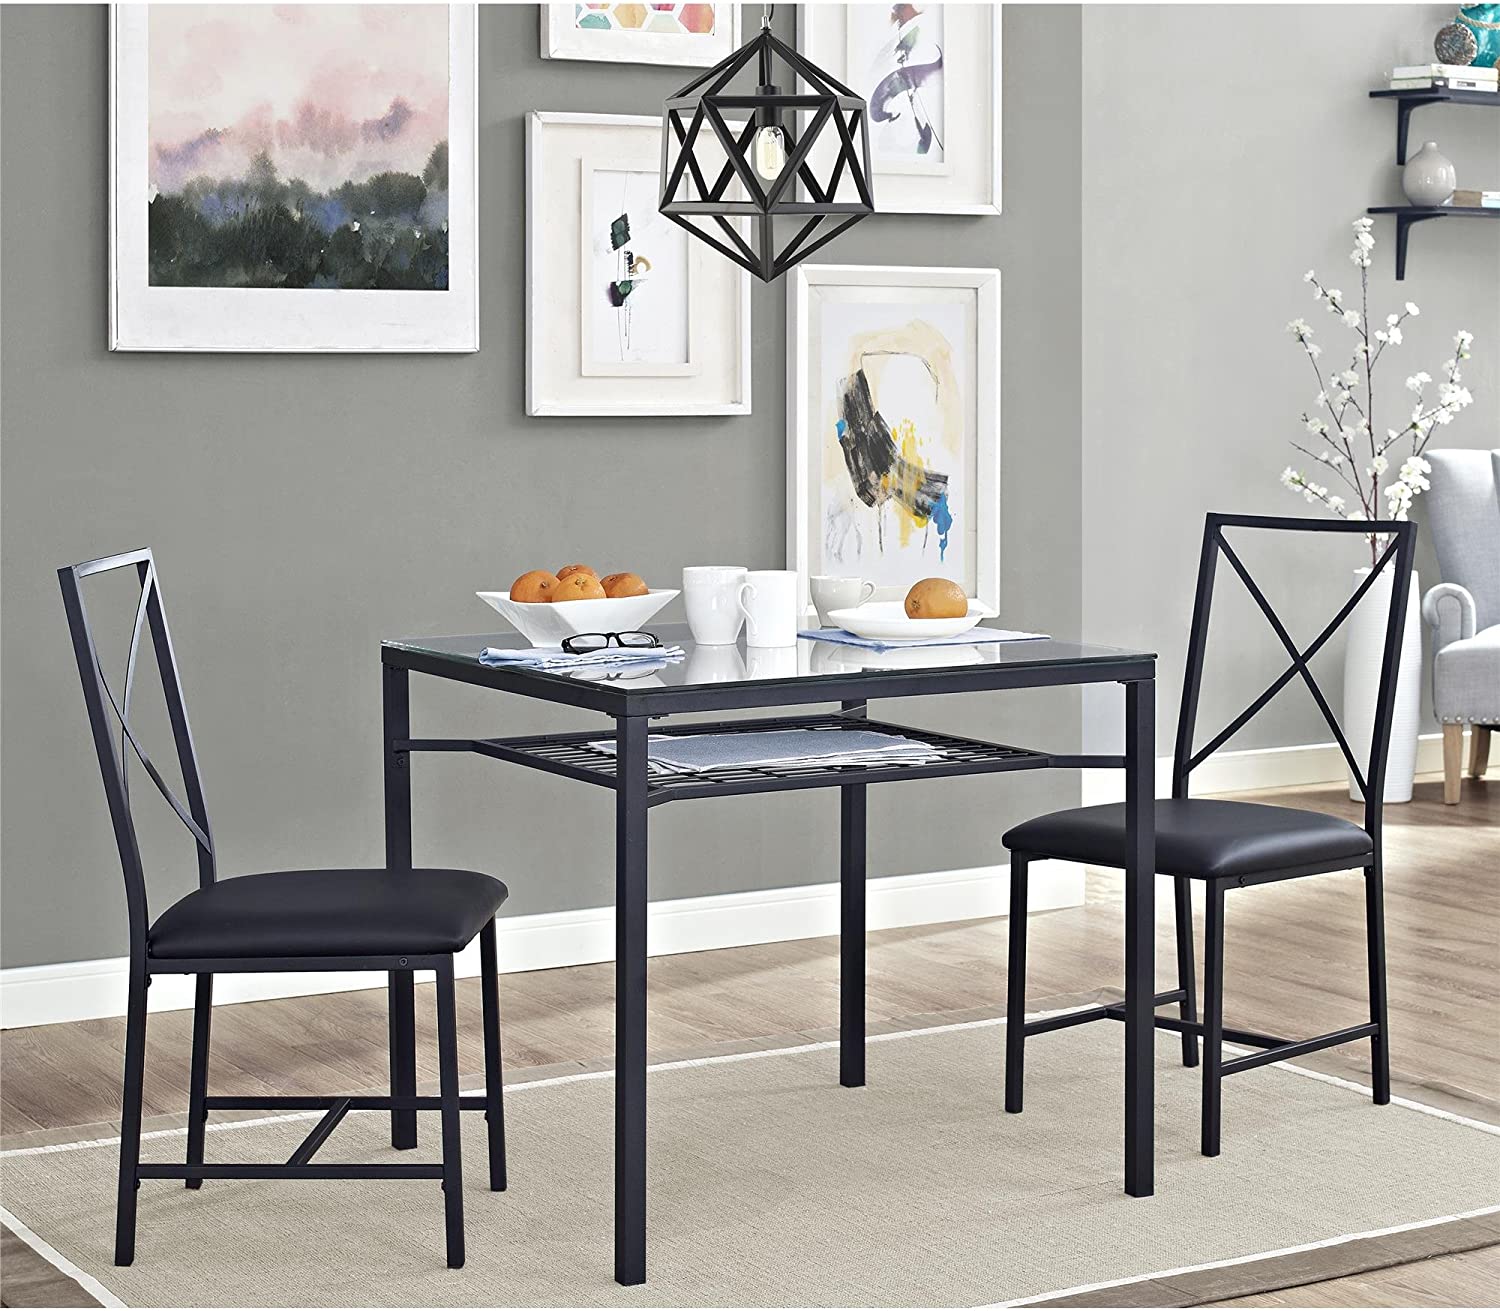 Conjunt de taula de menjador modern de vidre 2 cadires Mobles de menjador Taula de menjador quadrada